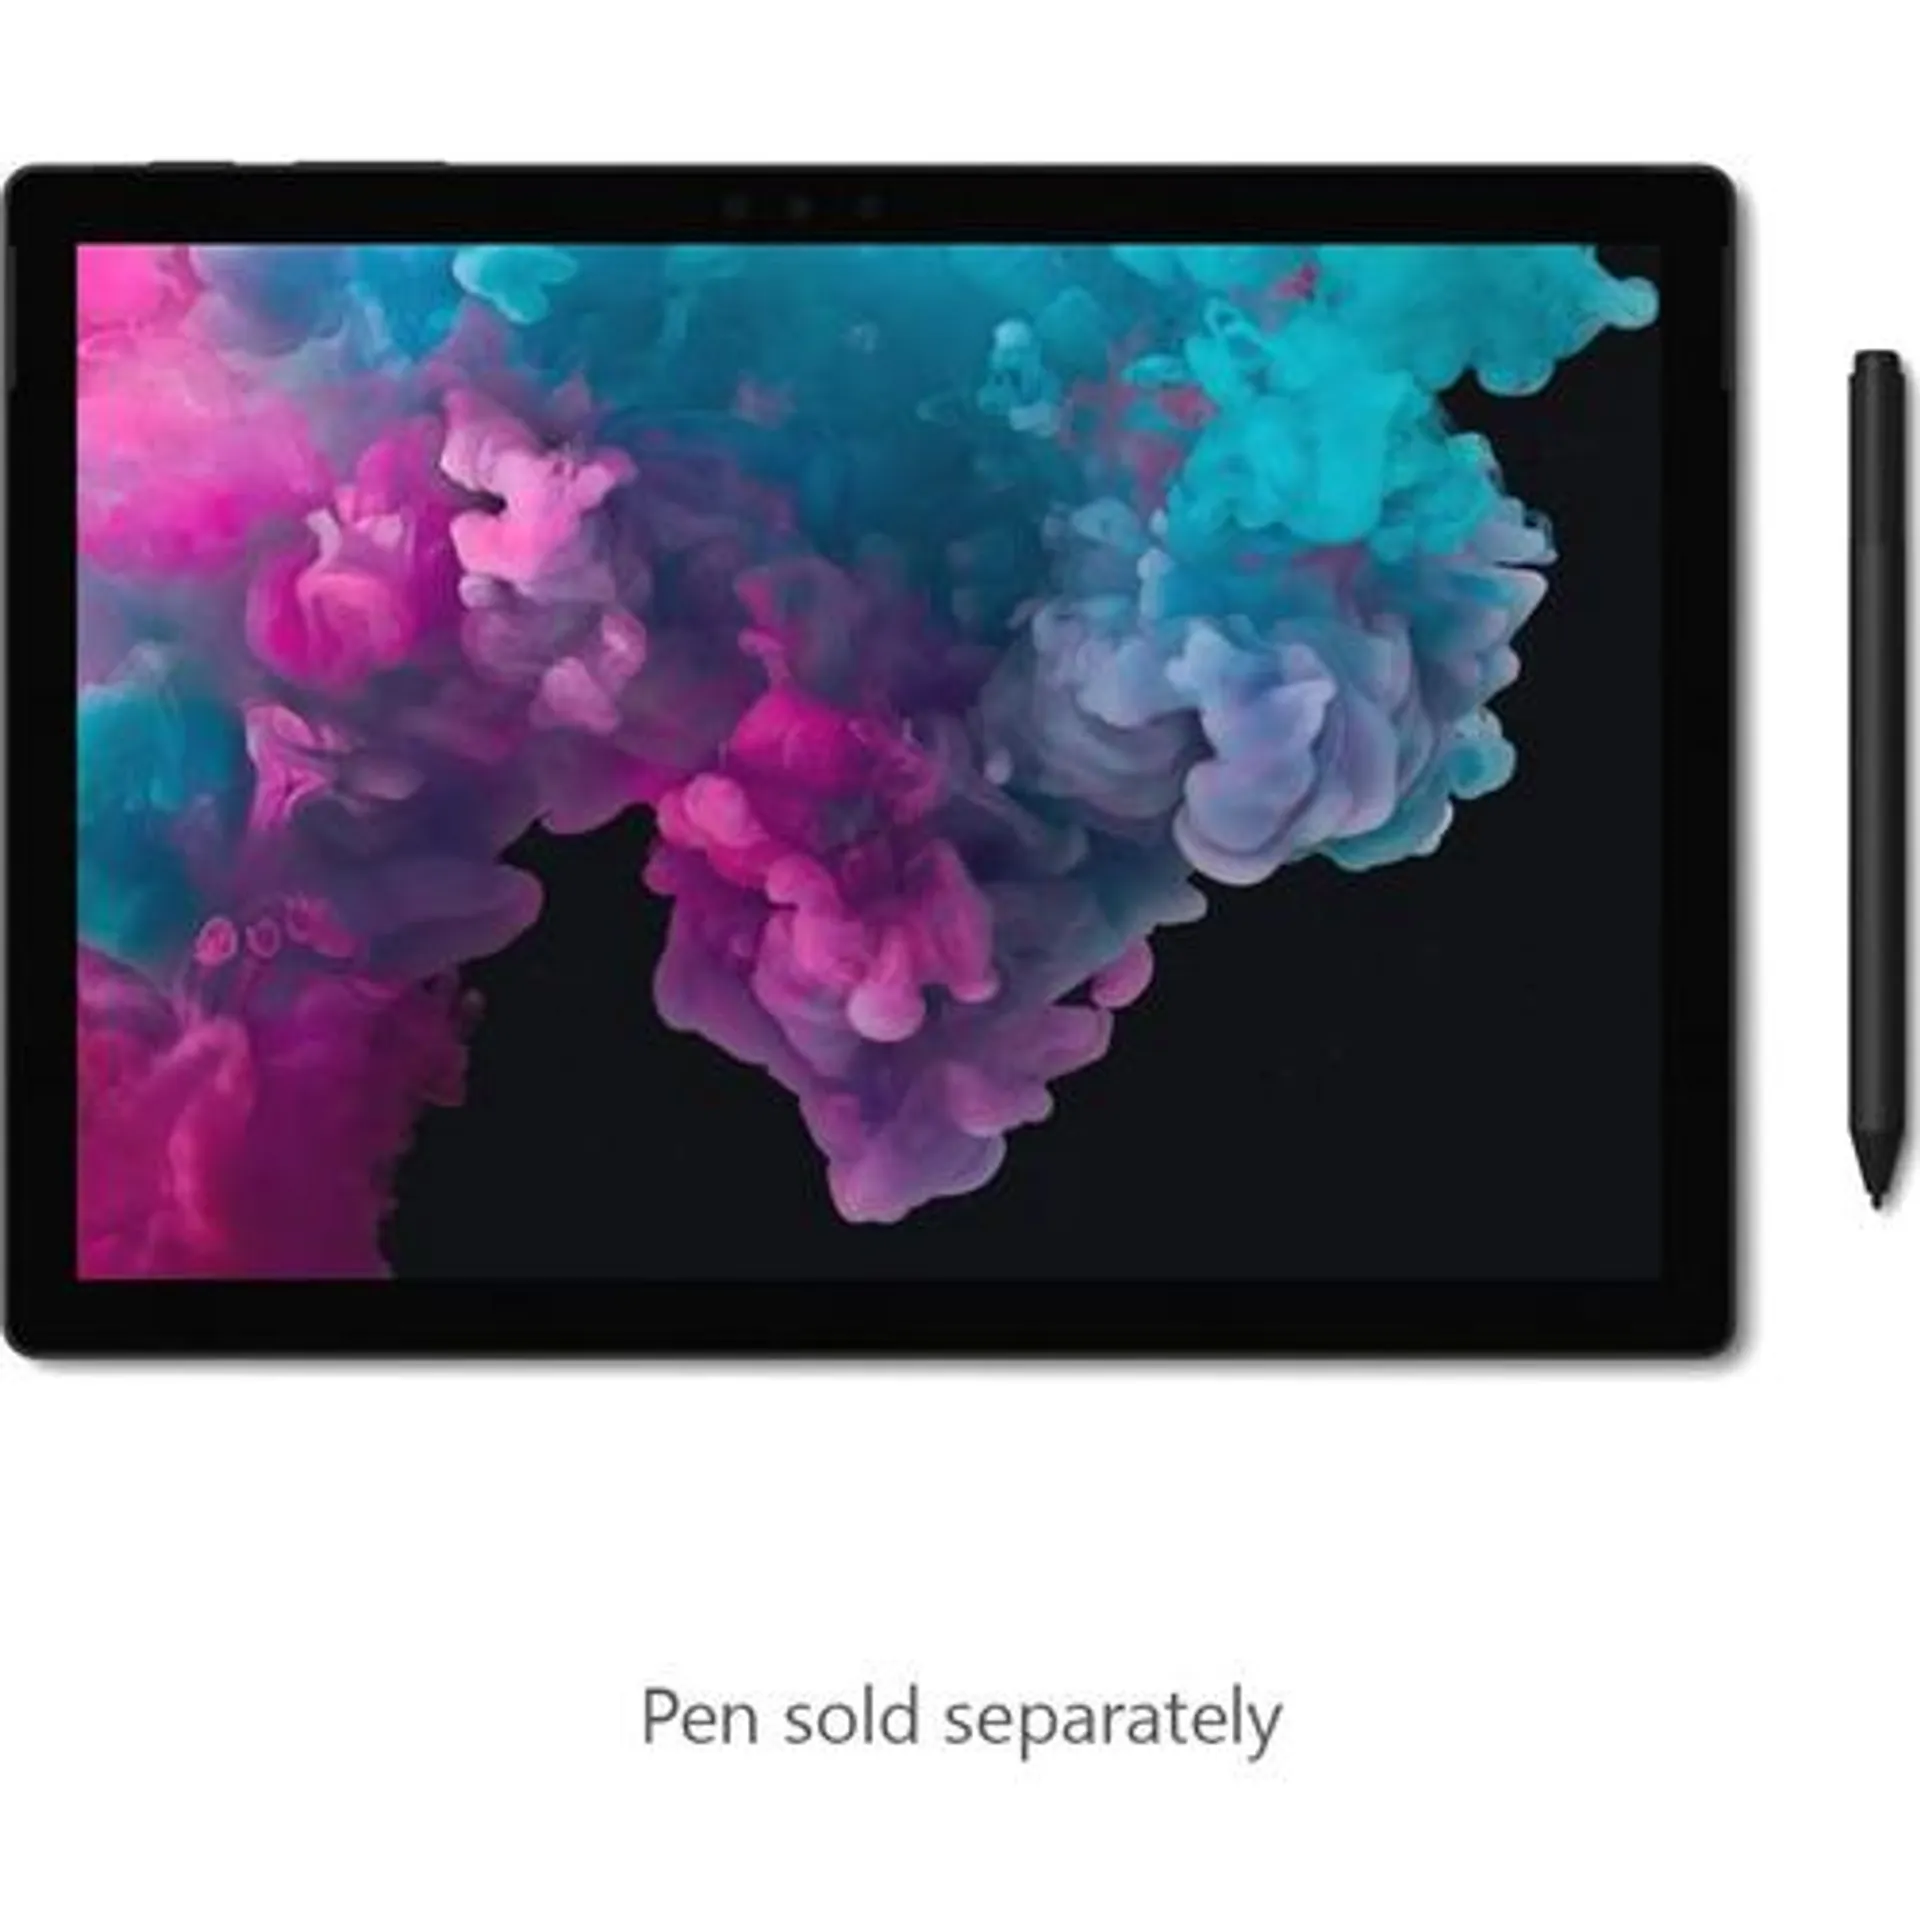 Microsoft Surface Pro 6 12.3" Intel i5-8250U 8GB/256GB SSD Tablet, Black (OPEN BOX)